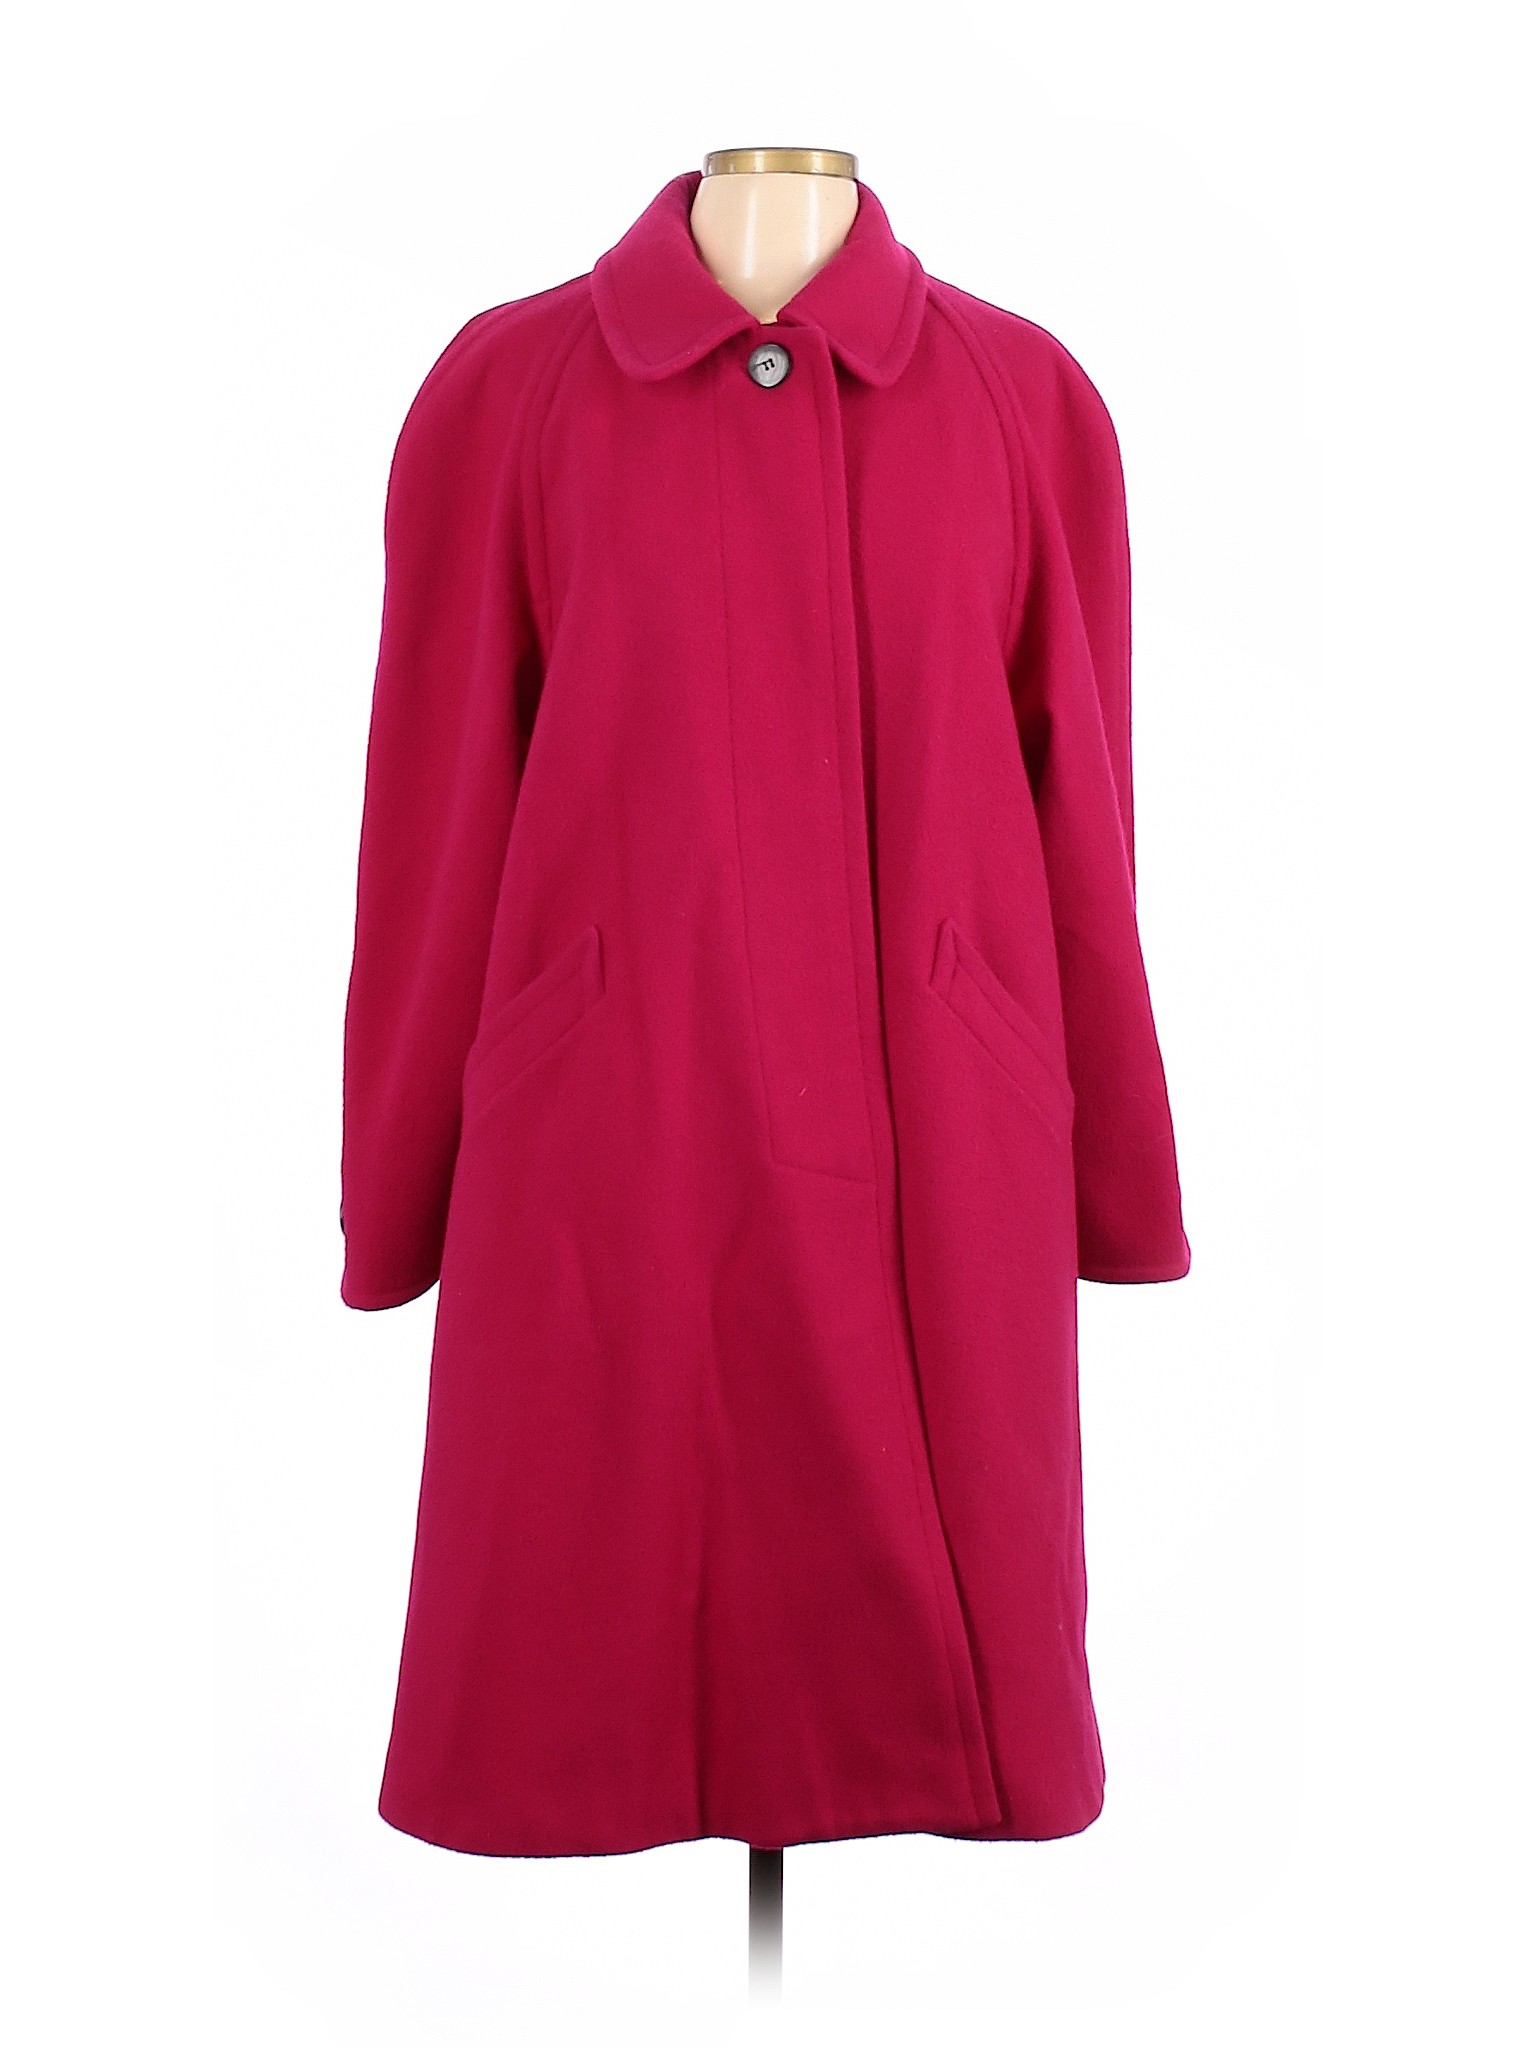 Jones New York Women Pink Wool Coat 10 | eBay